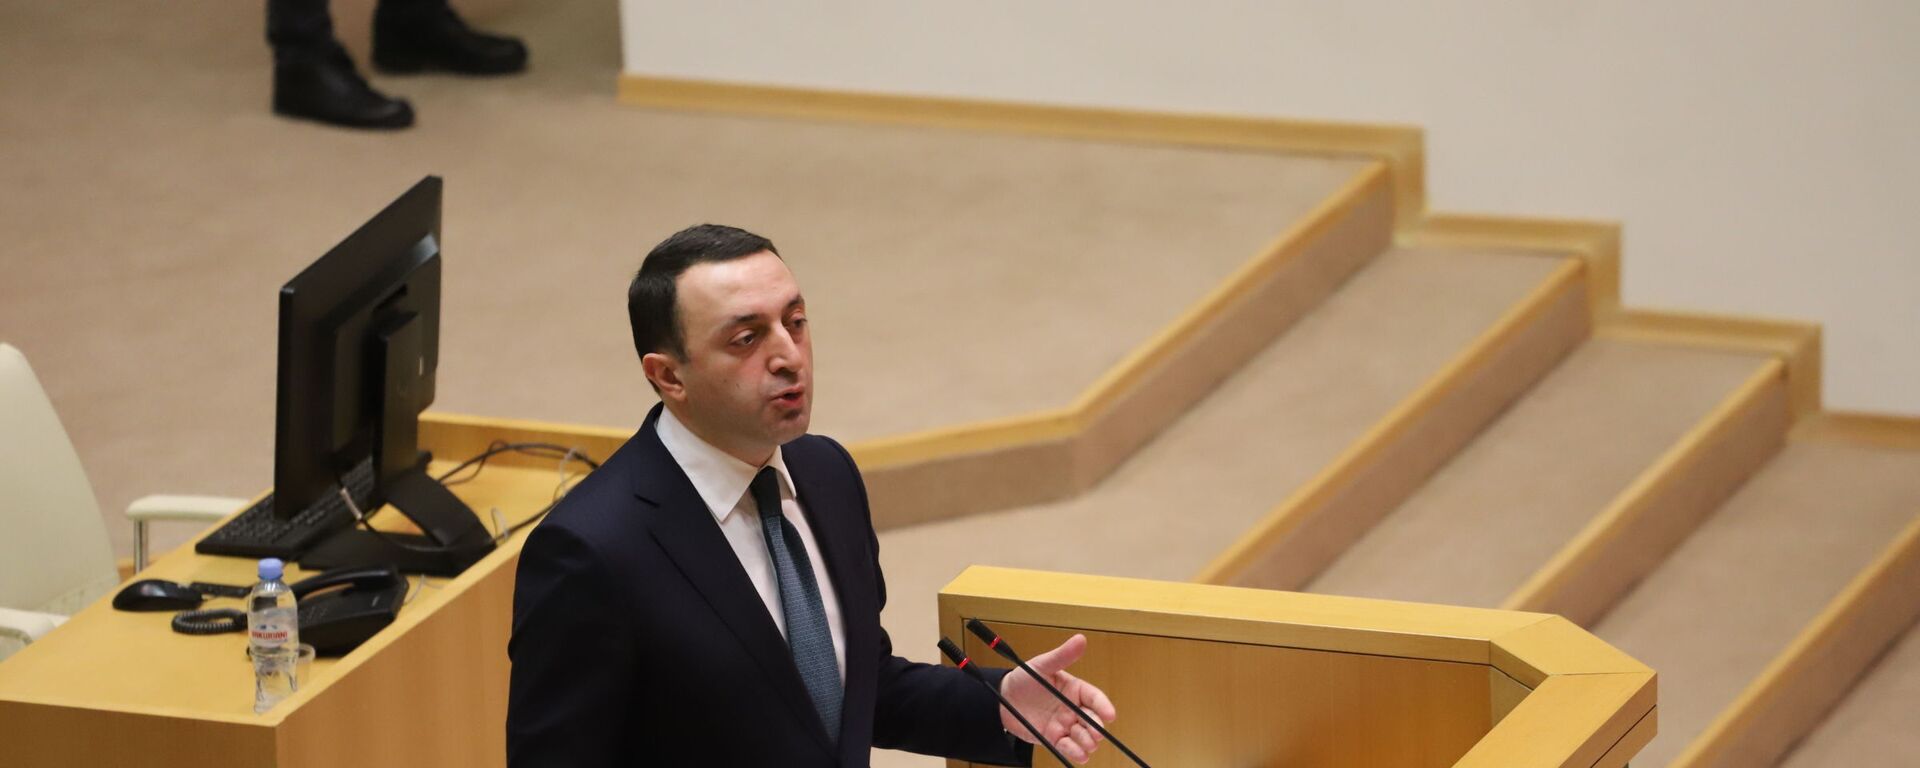 Ираклий Гарибашвили выступает в парламенте 22 февраля 2021 года - Sputnik Грузия, 1920, 22.02.2021